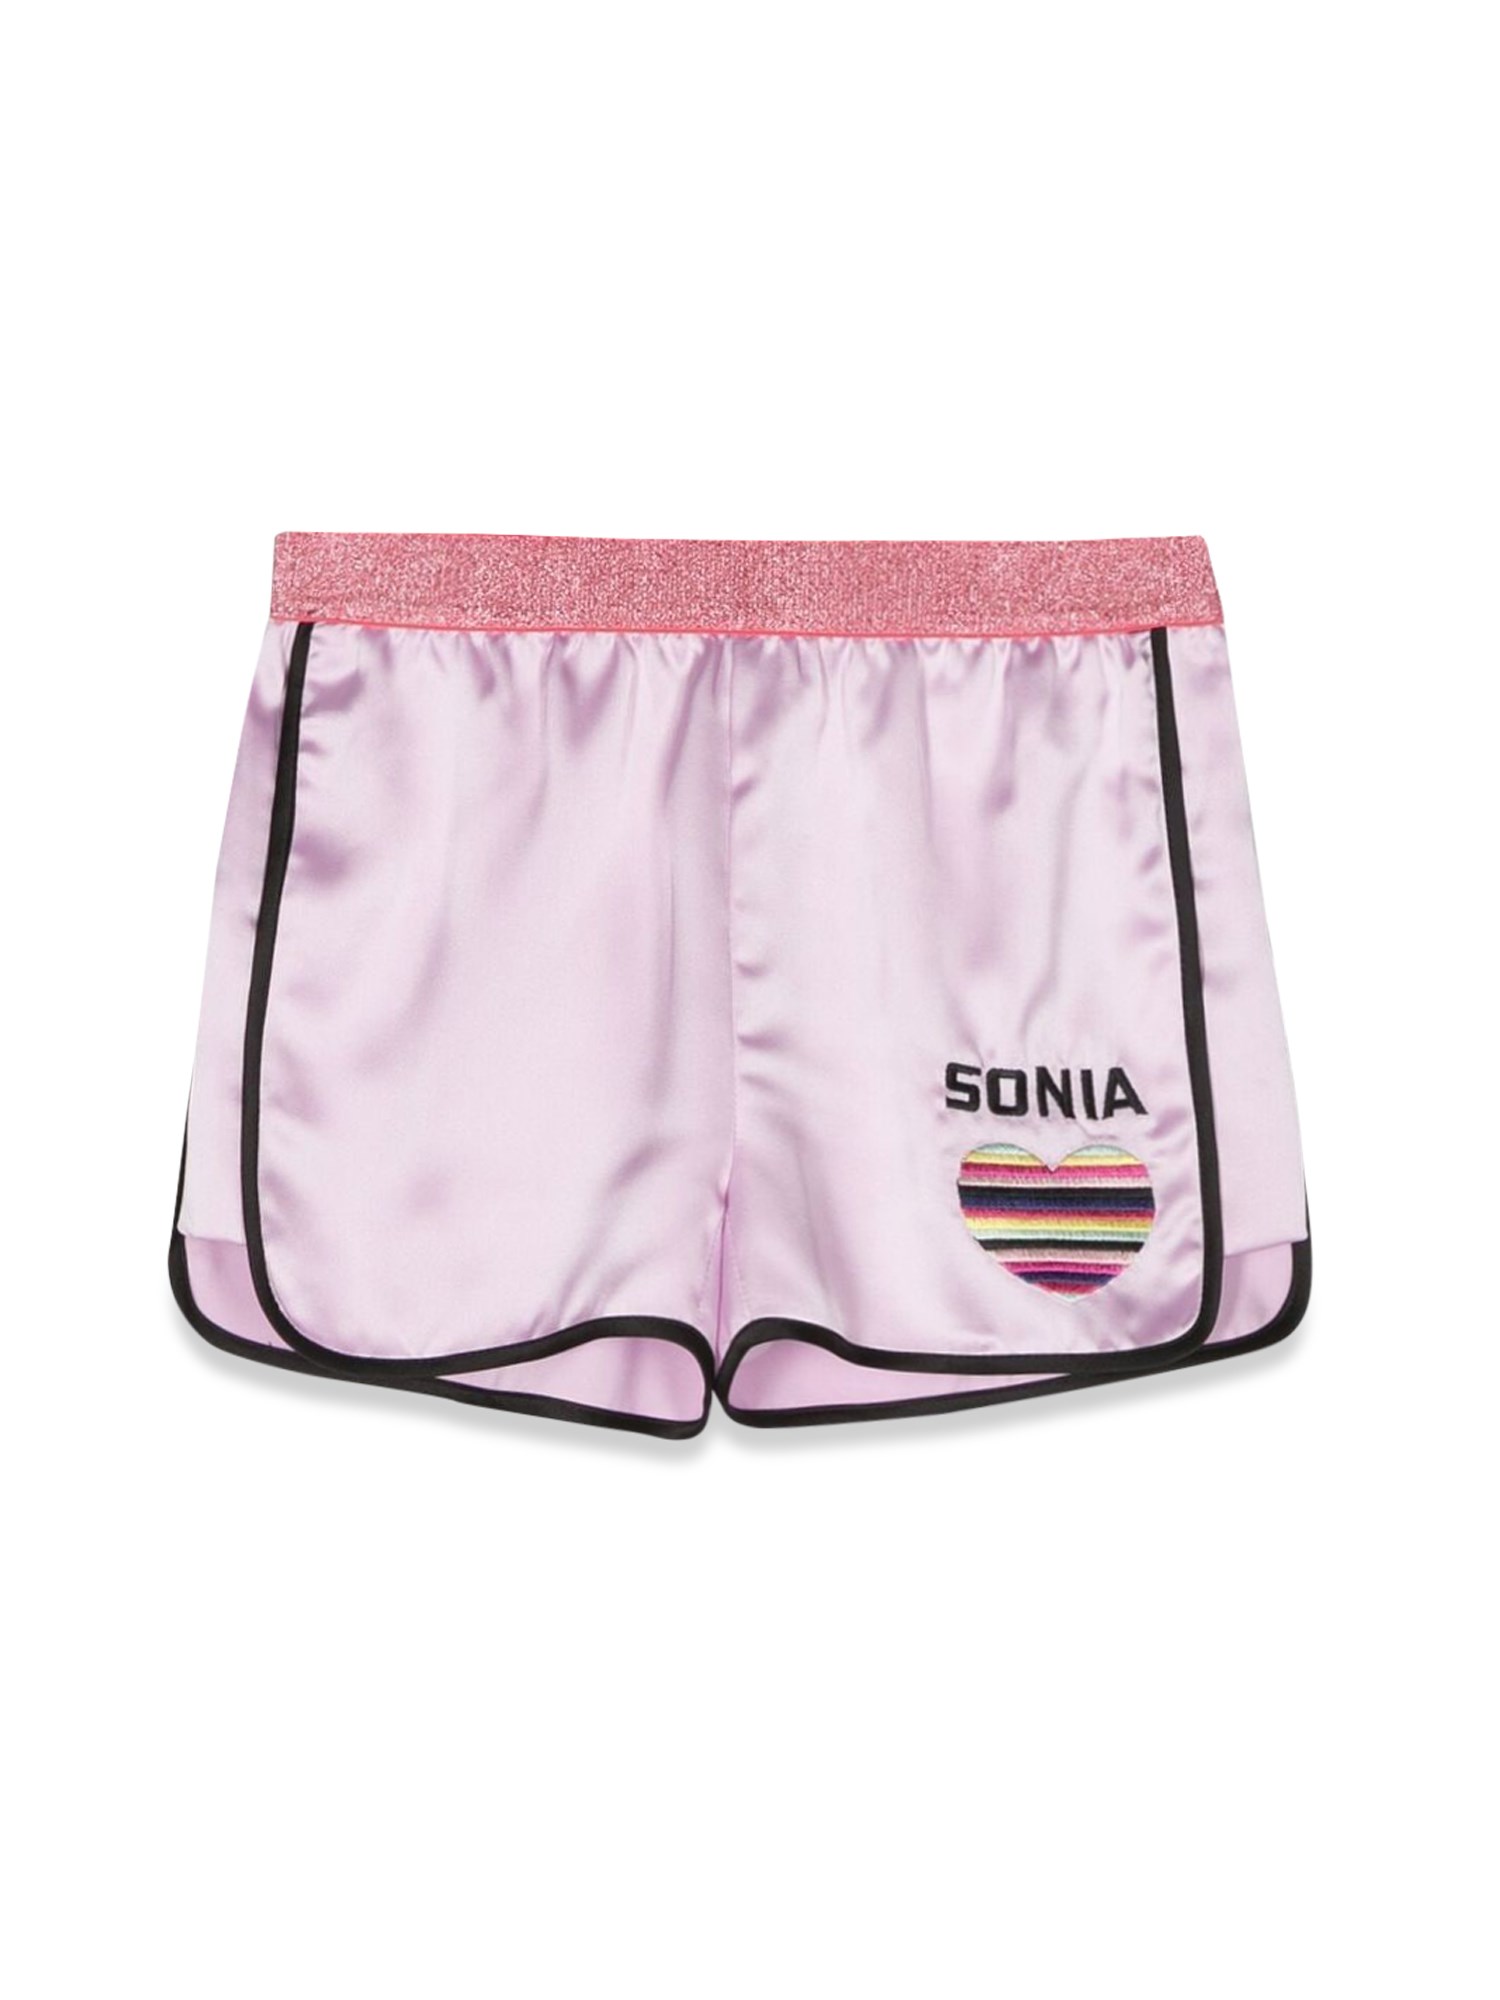 sonia rykiel heart logo shorts